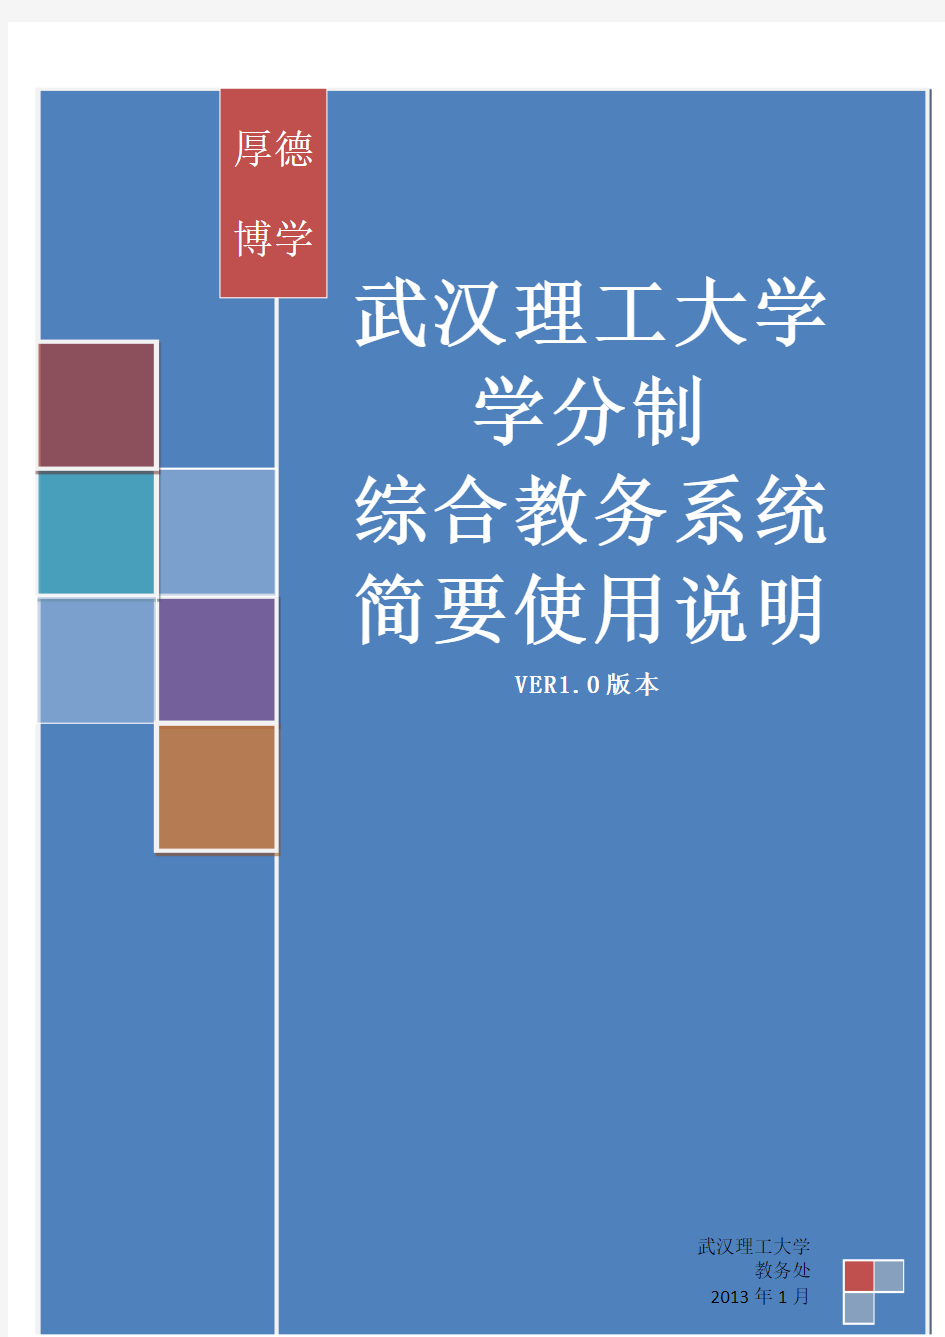 武汉理工大学 学分制教务系统简明操作手册